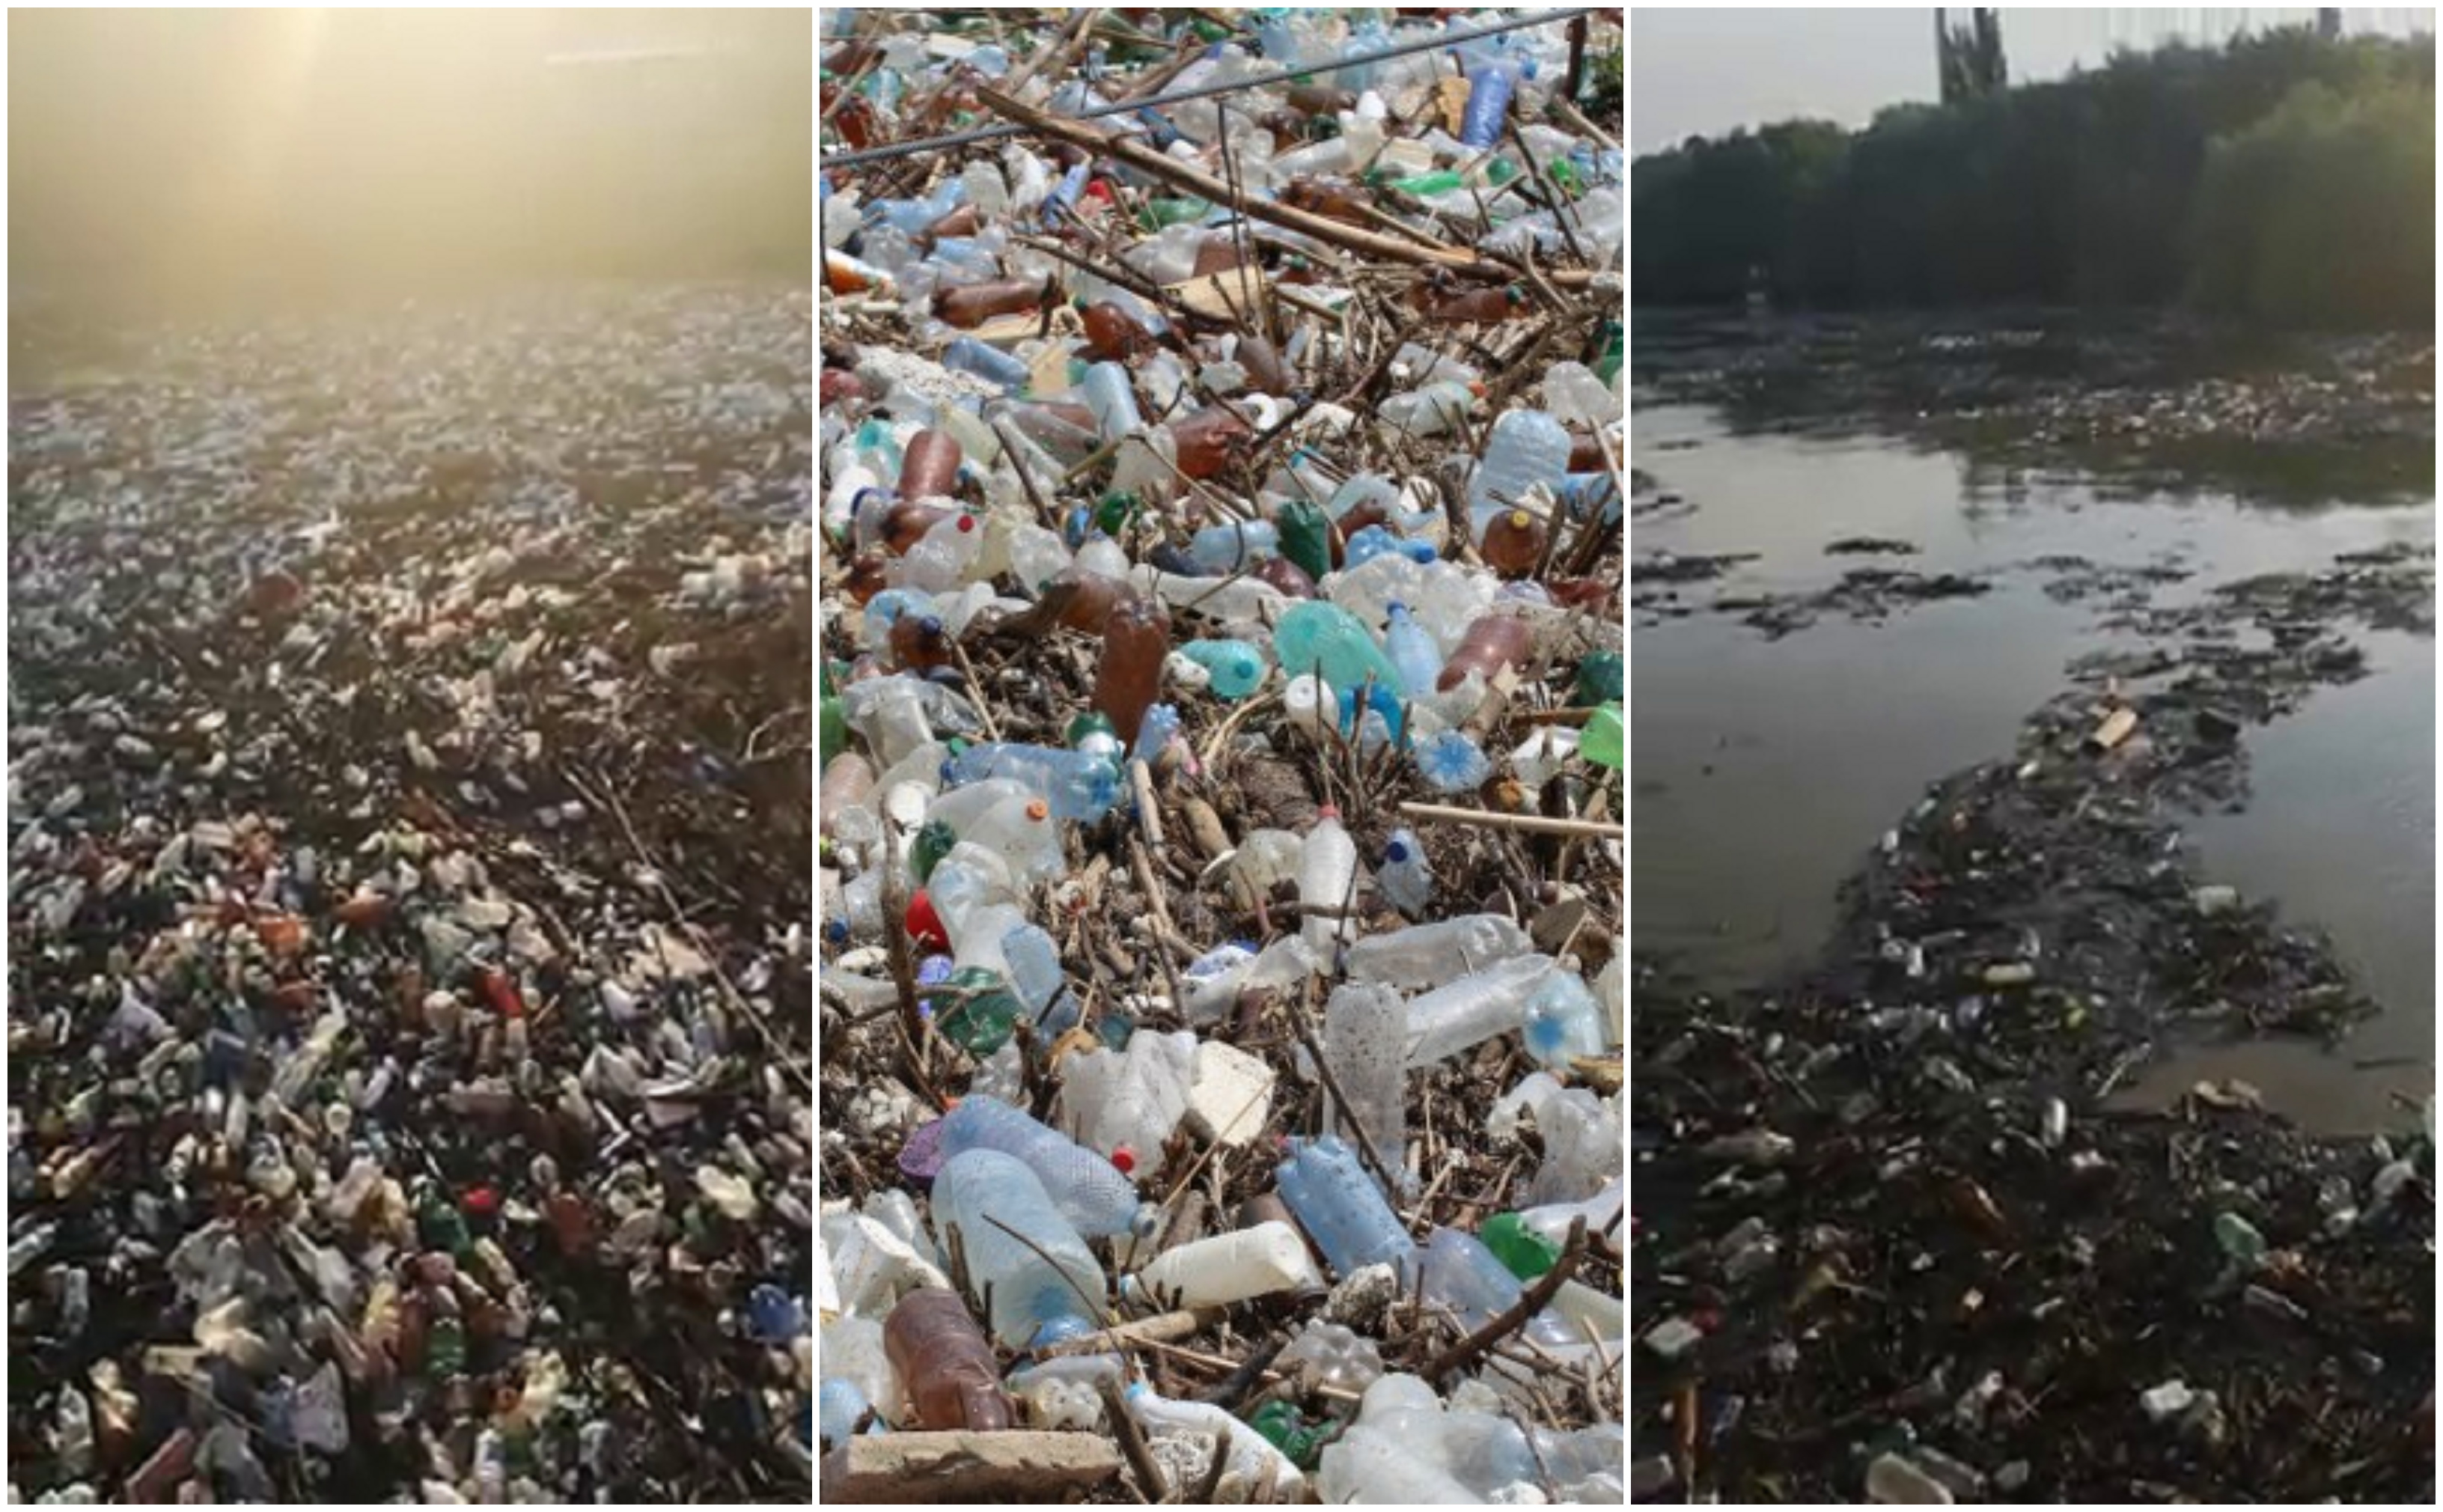 Poluare pe Dunăre. Video cu tonele de deșeuri strânse la Galați, după inundații - Imaginea 1